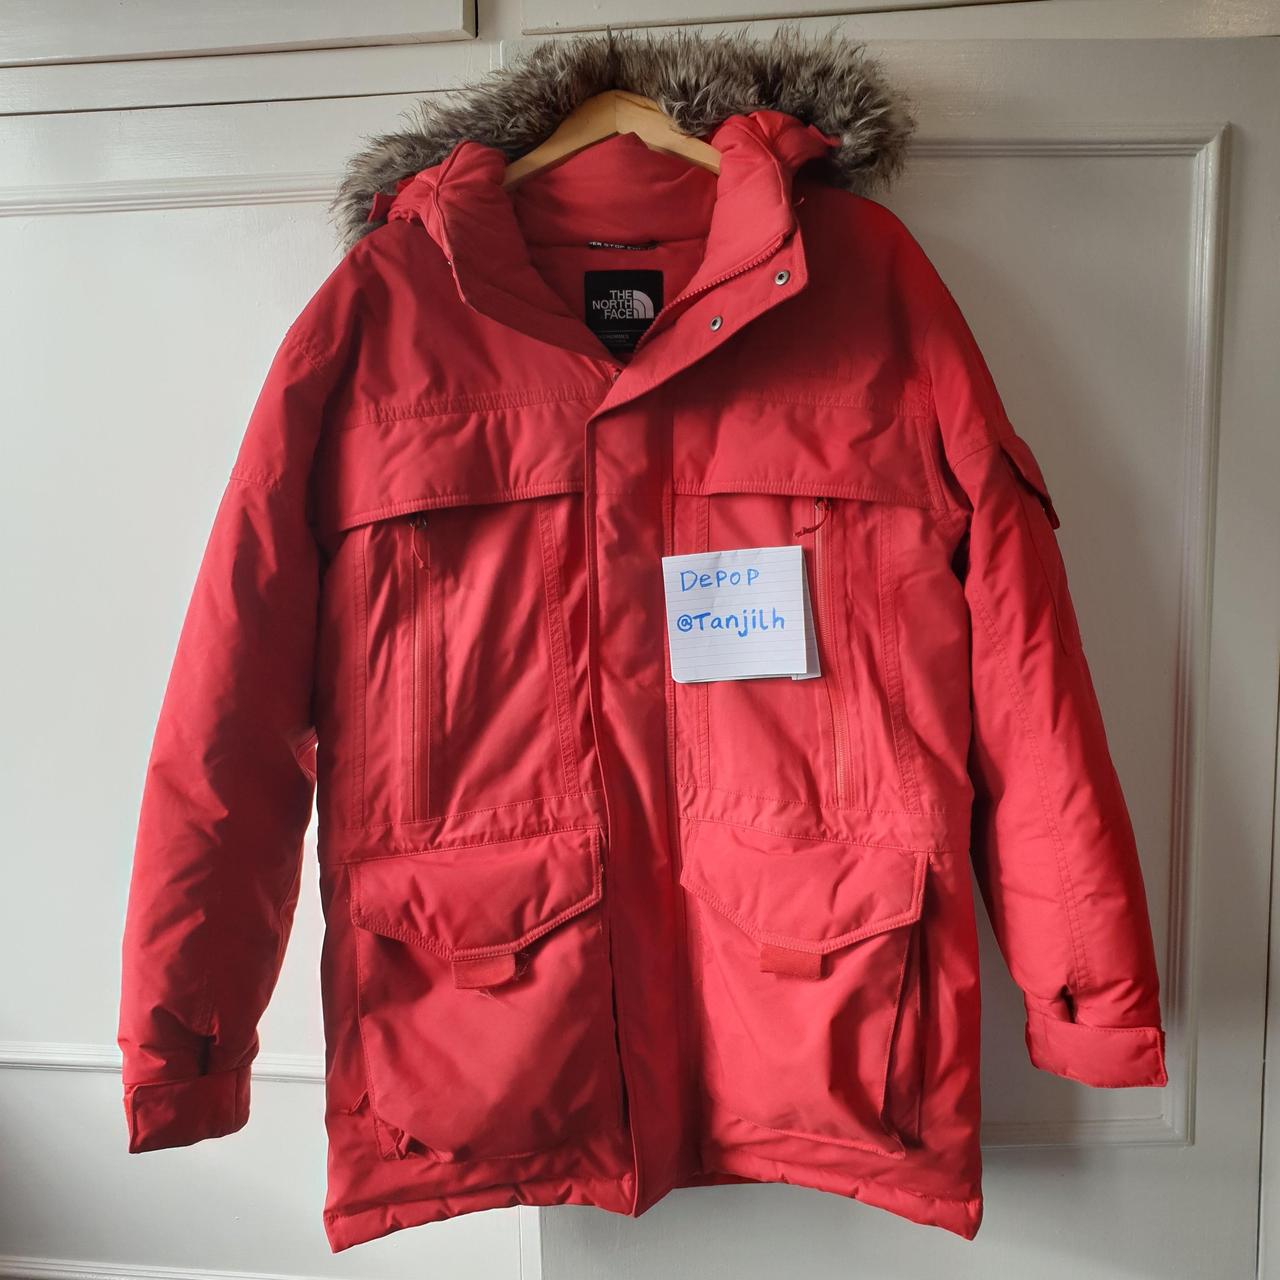 North Face Parka Red / Snowboarding Jacket , Fur... - Depop